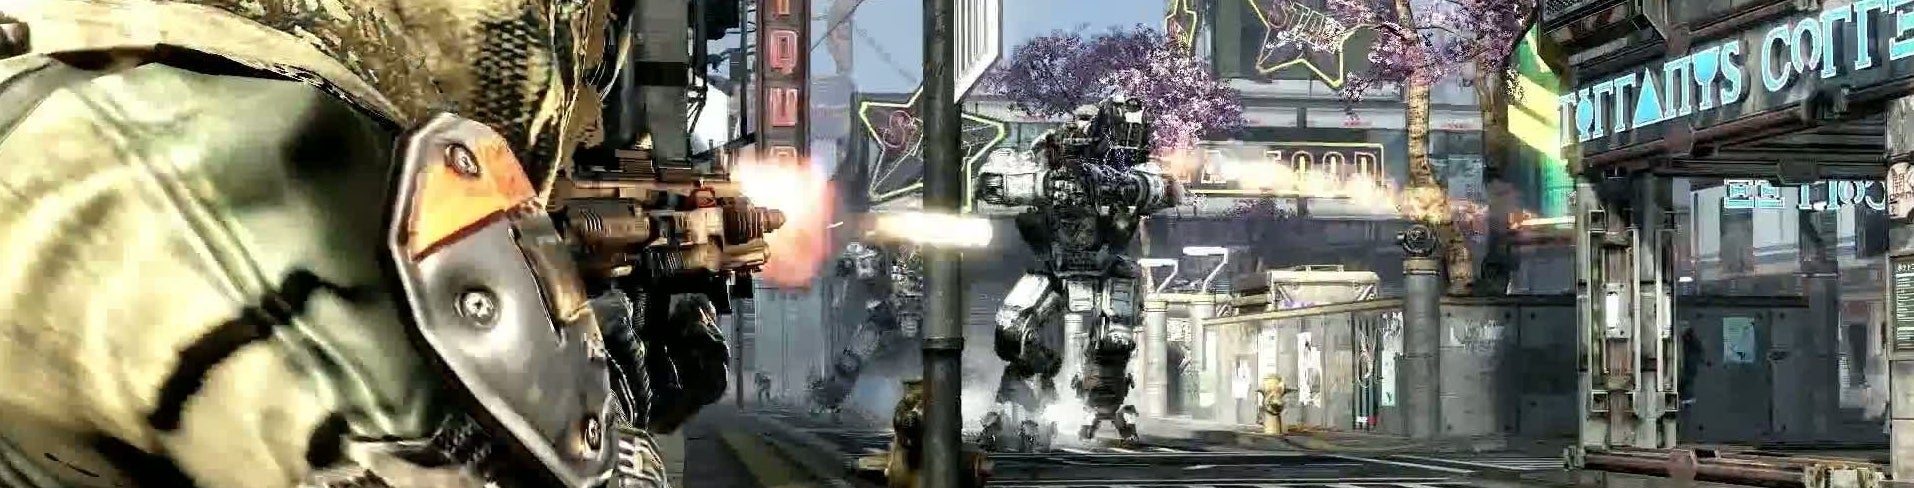 Obrazki dla Titanfall: Twórcy Call of Duty reanimują gatunek FPS